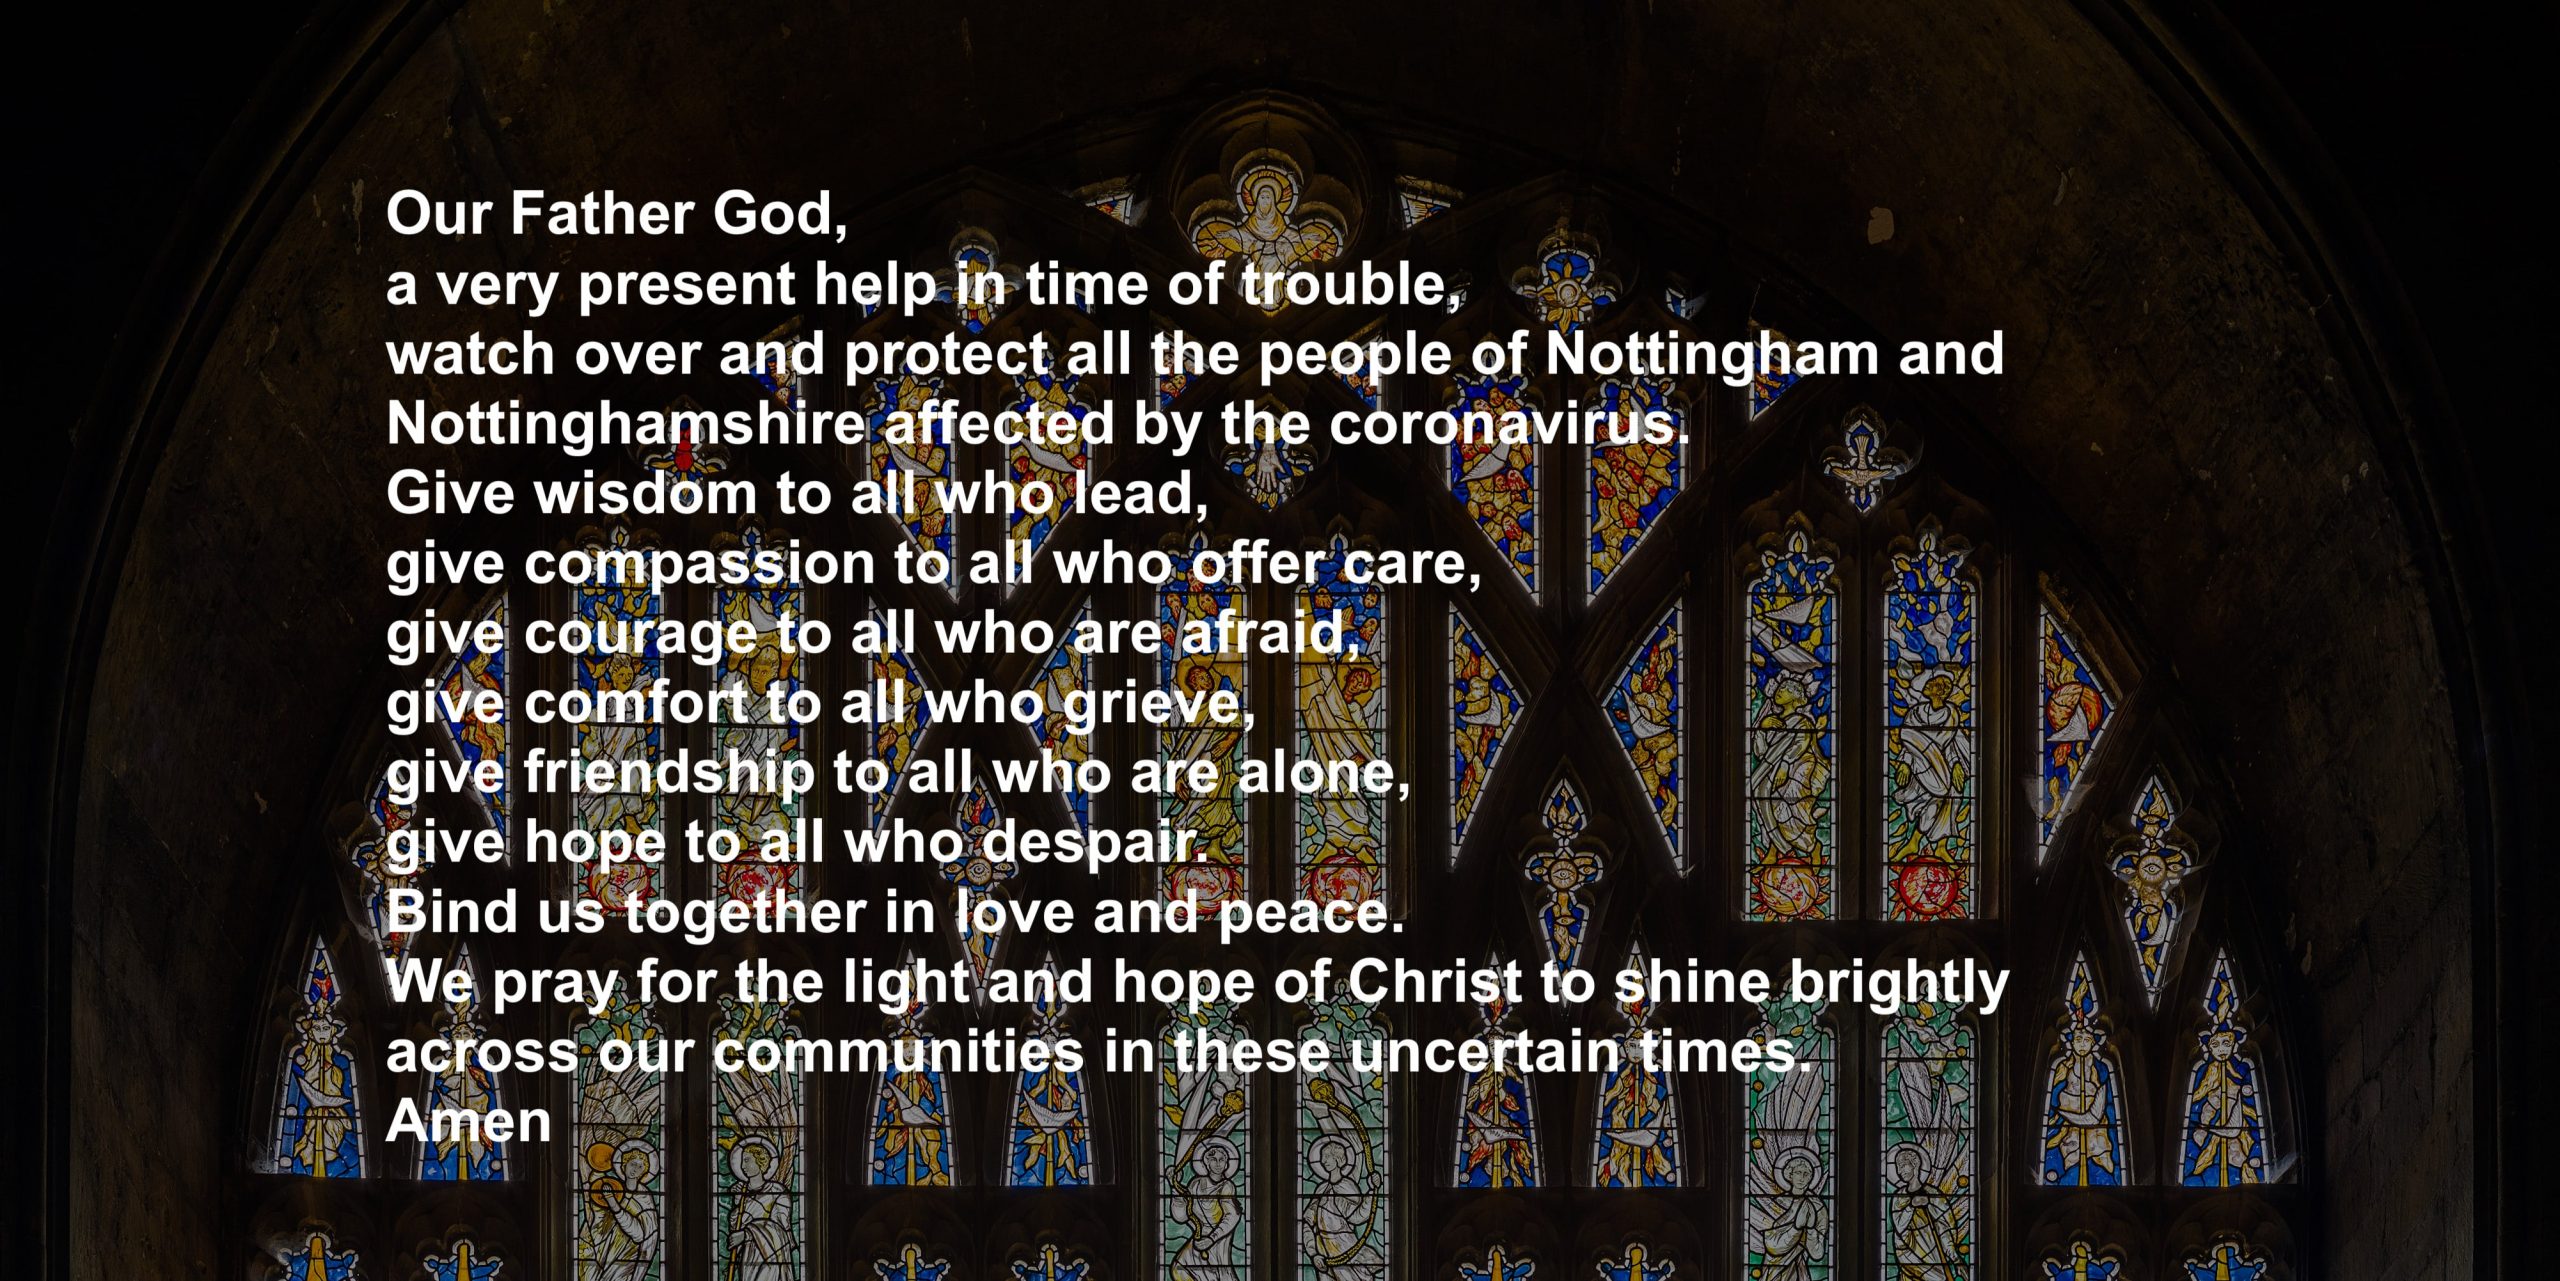 A prayer for Nottinghamshire